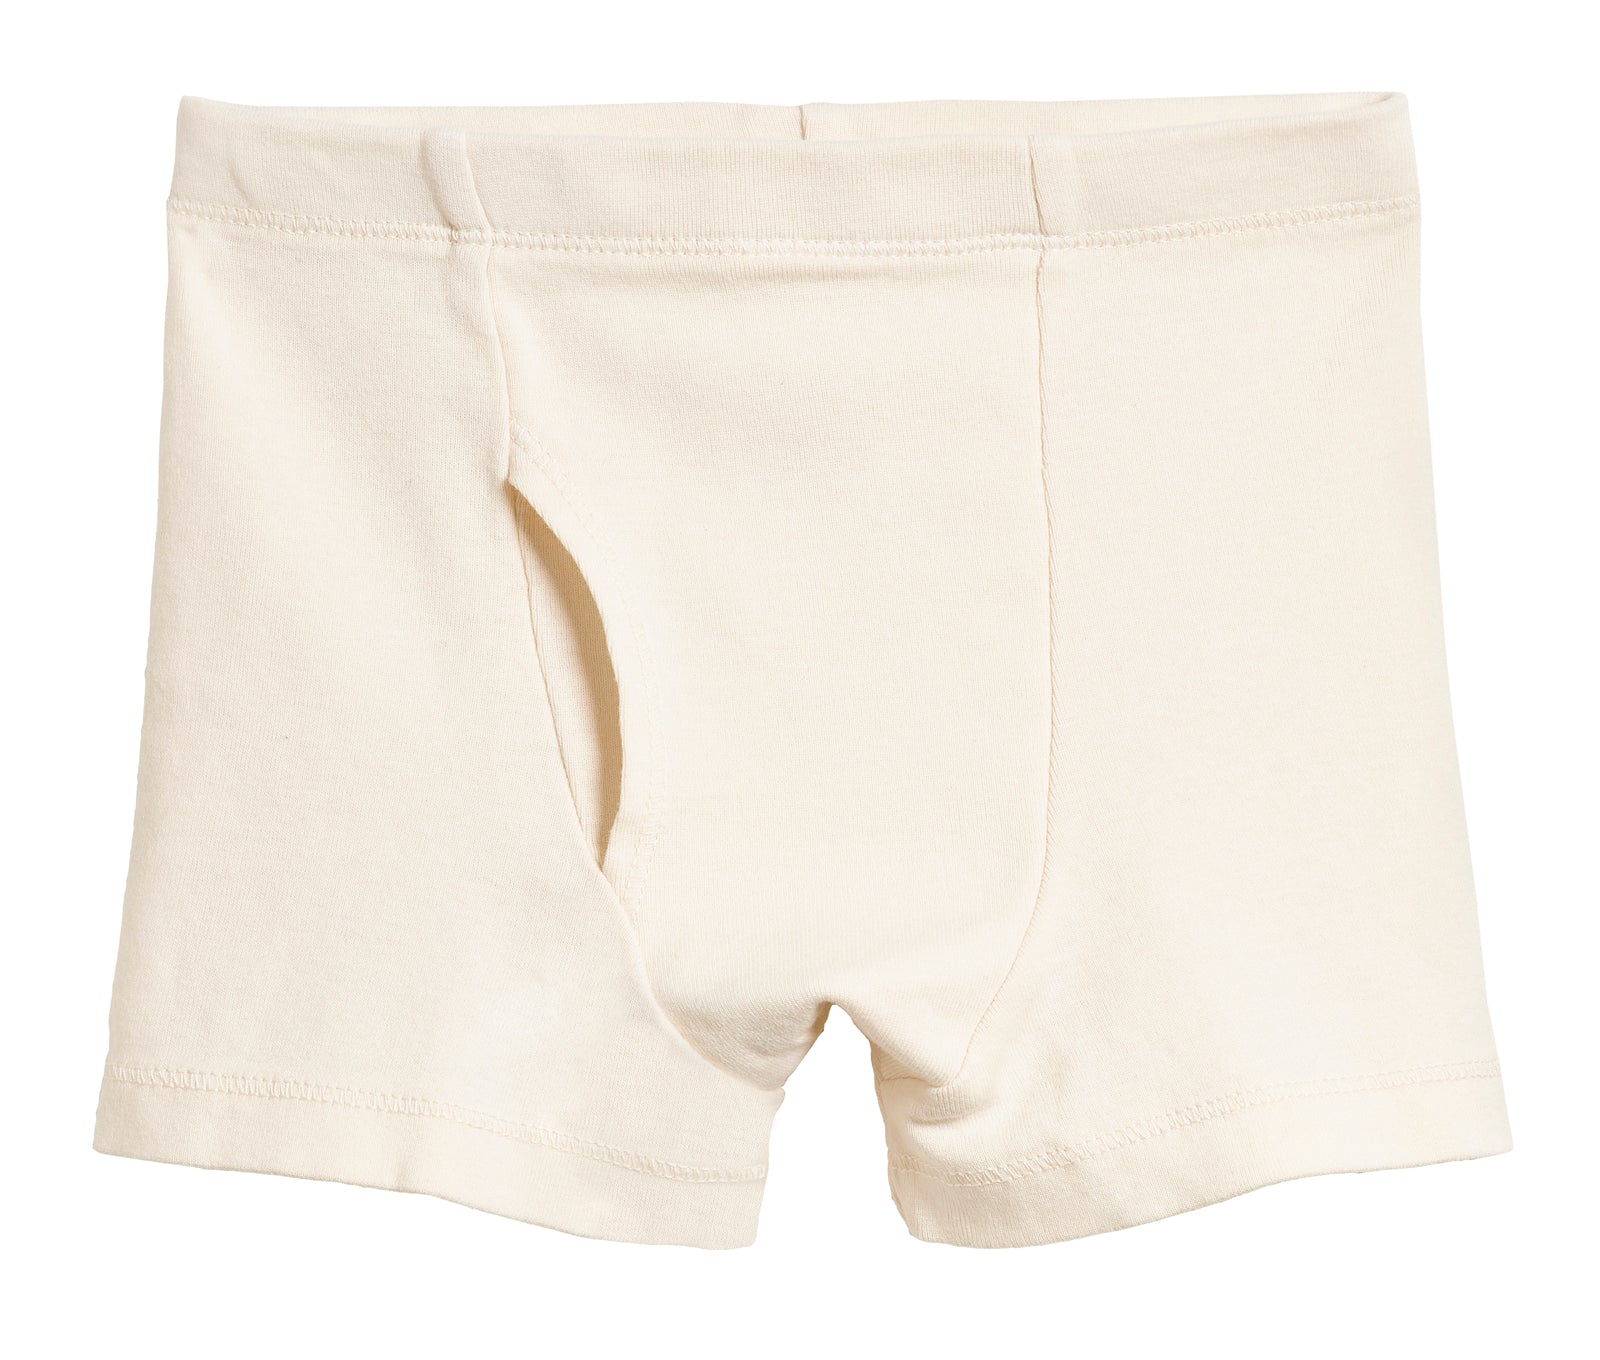 End-on-end cotton boxer short  Cotton boxer shorts, Boxer shorts